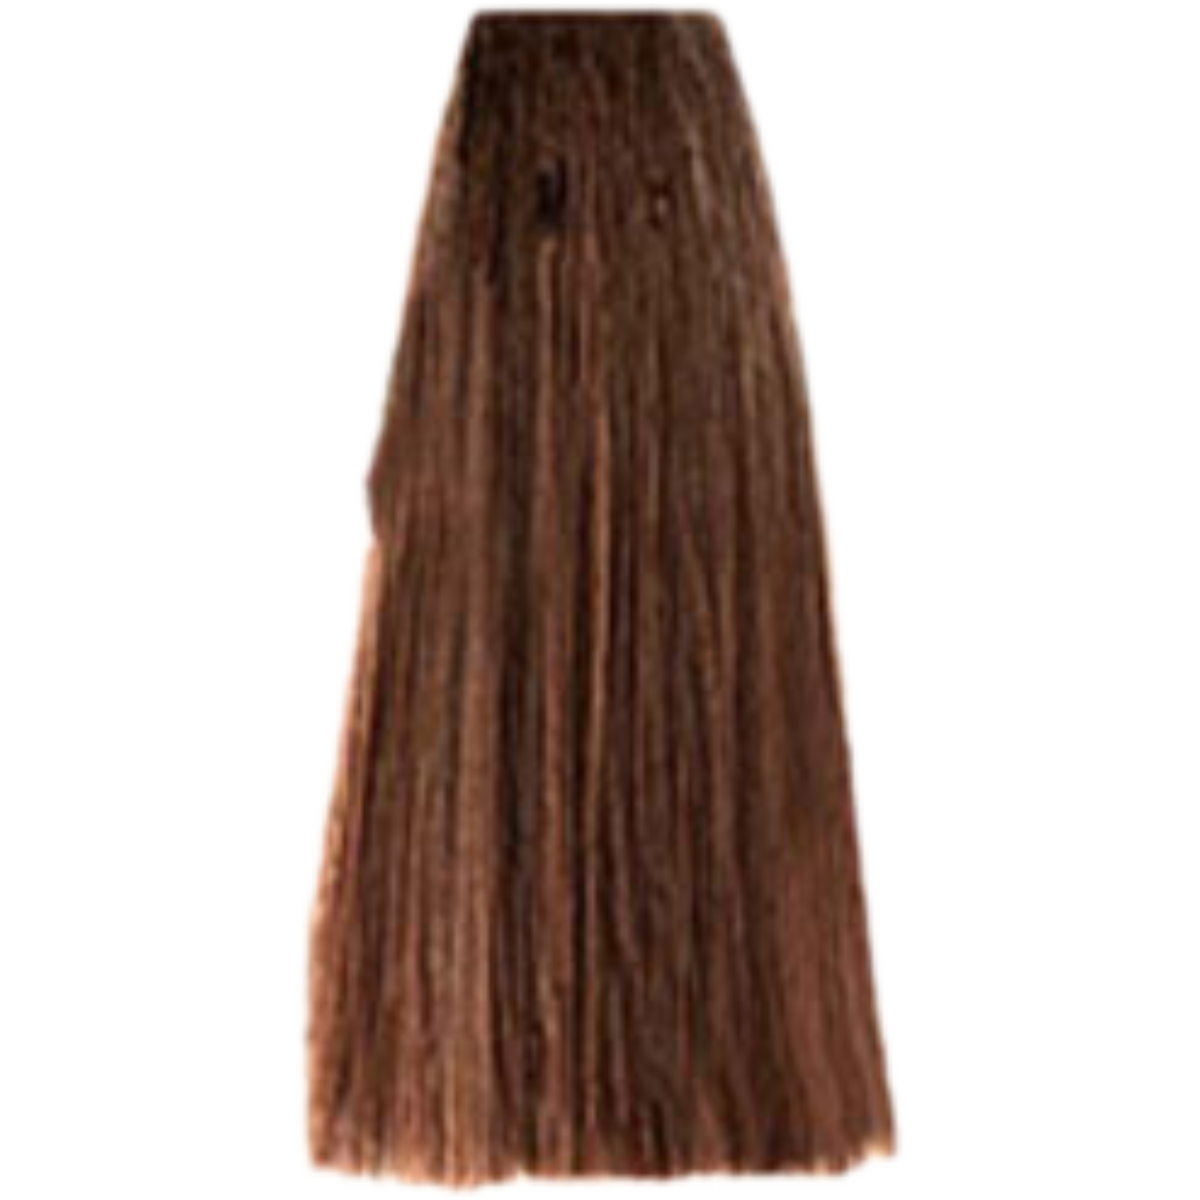 צבע שיער 5.4 LIGHT COPPER BROWN פארמויטה FarmaVita צבע לשיער 100 גרם